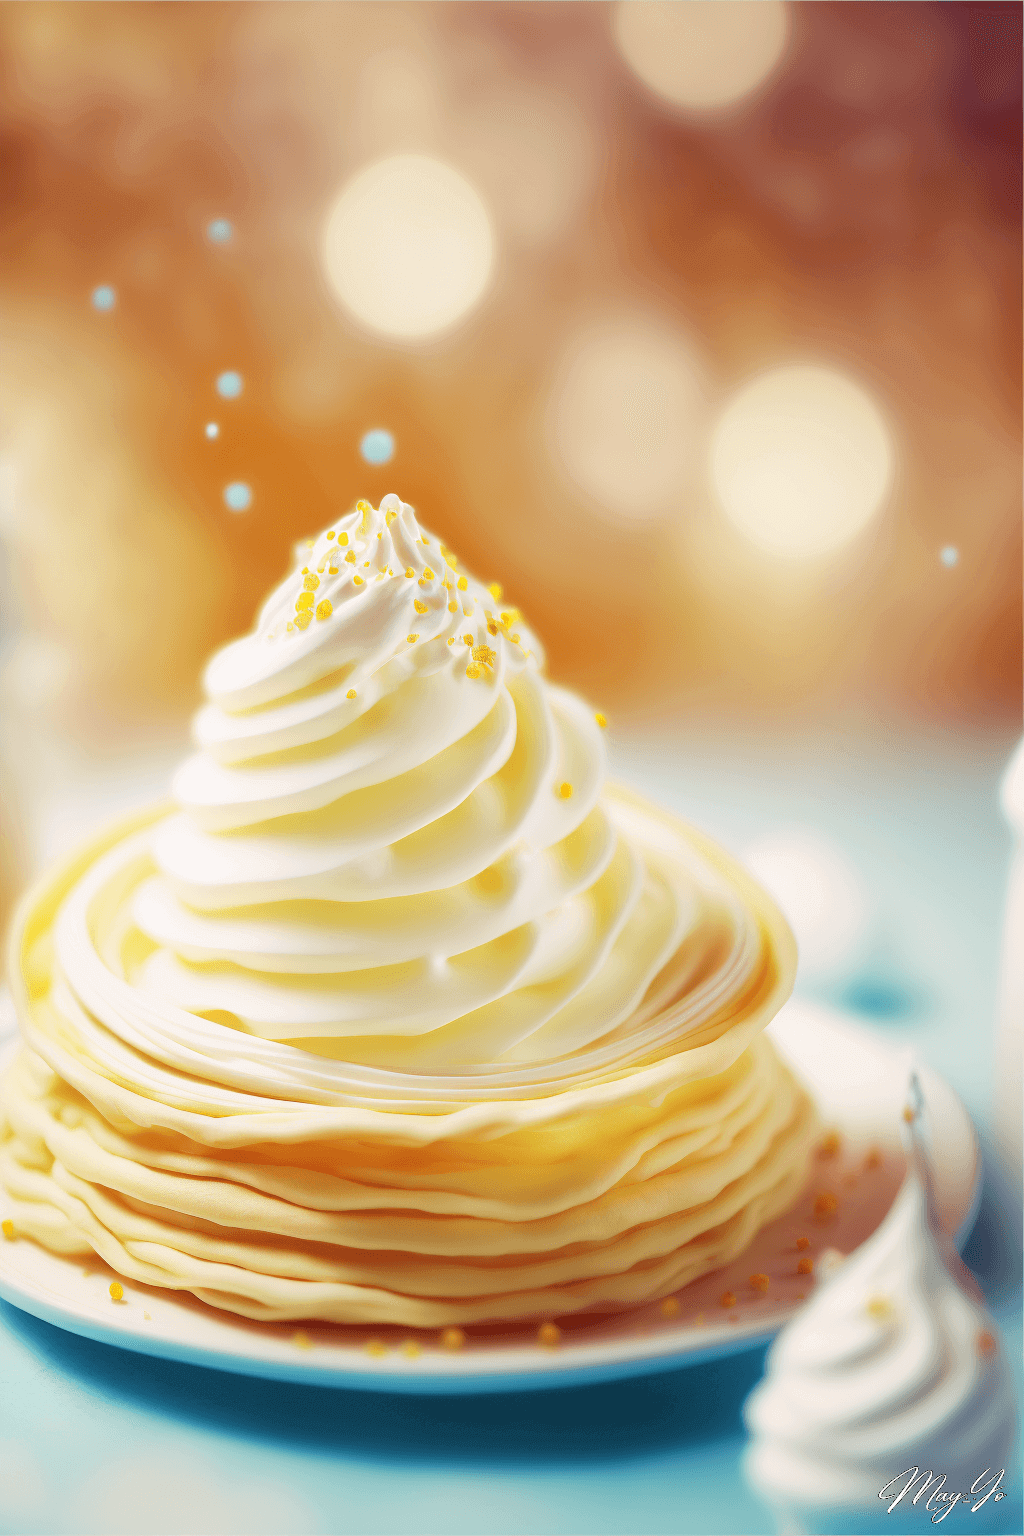 ホイップクリームが載ったパンケーキの壁紙イラスト 生クリーム添えホットケーキのイラスト待受 AIイラスト待受 縦長画像 pancake with whipped cream fiction art hotcake